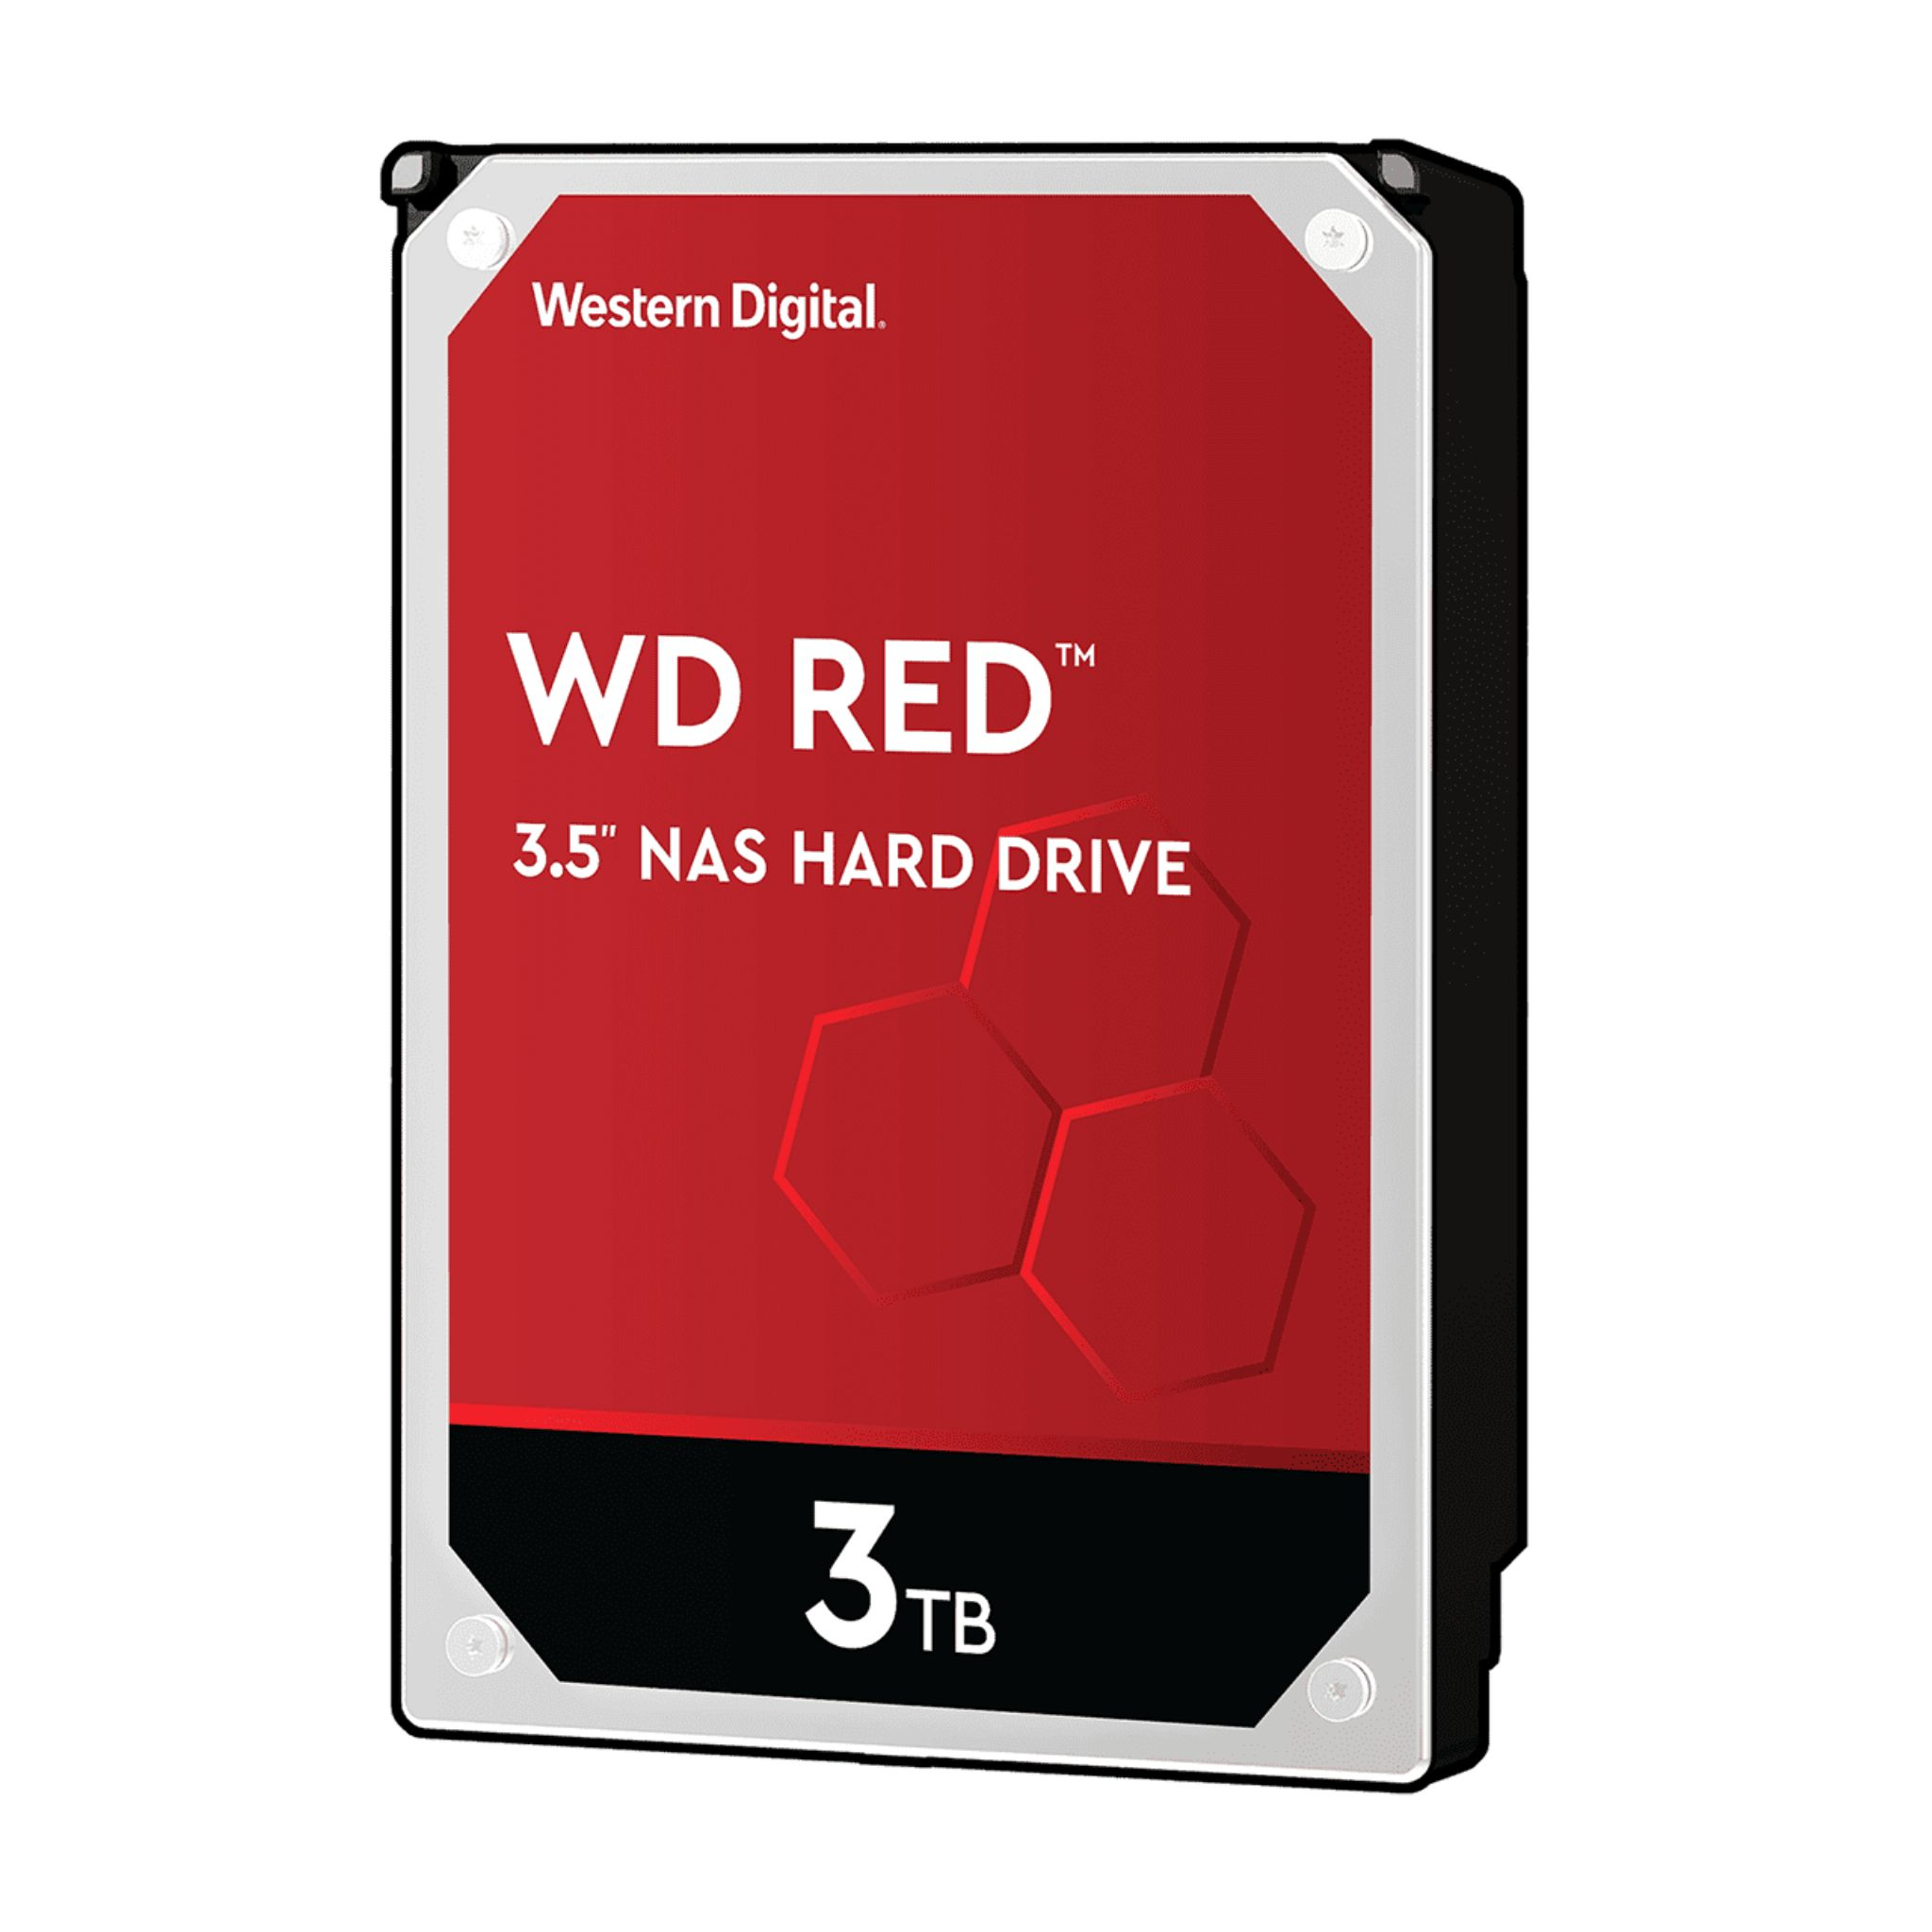 RED WD WESTERN Zoll, DIGITAL WD30EFAX), 3,5 (SATA, GB, NAS 3 3000 3.5\